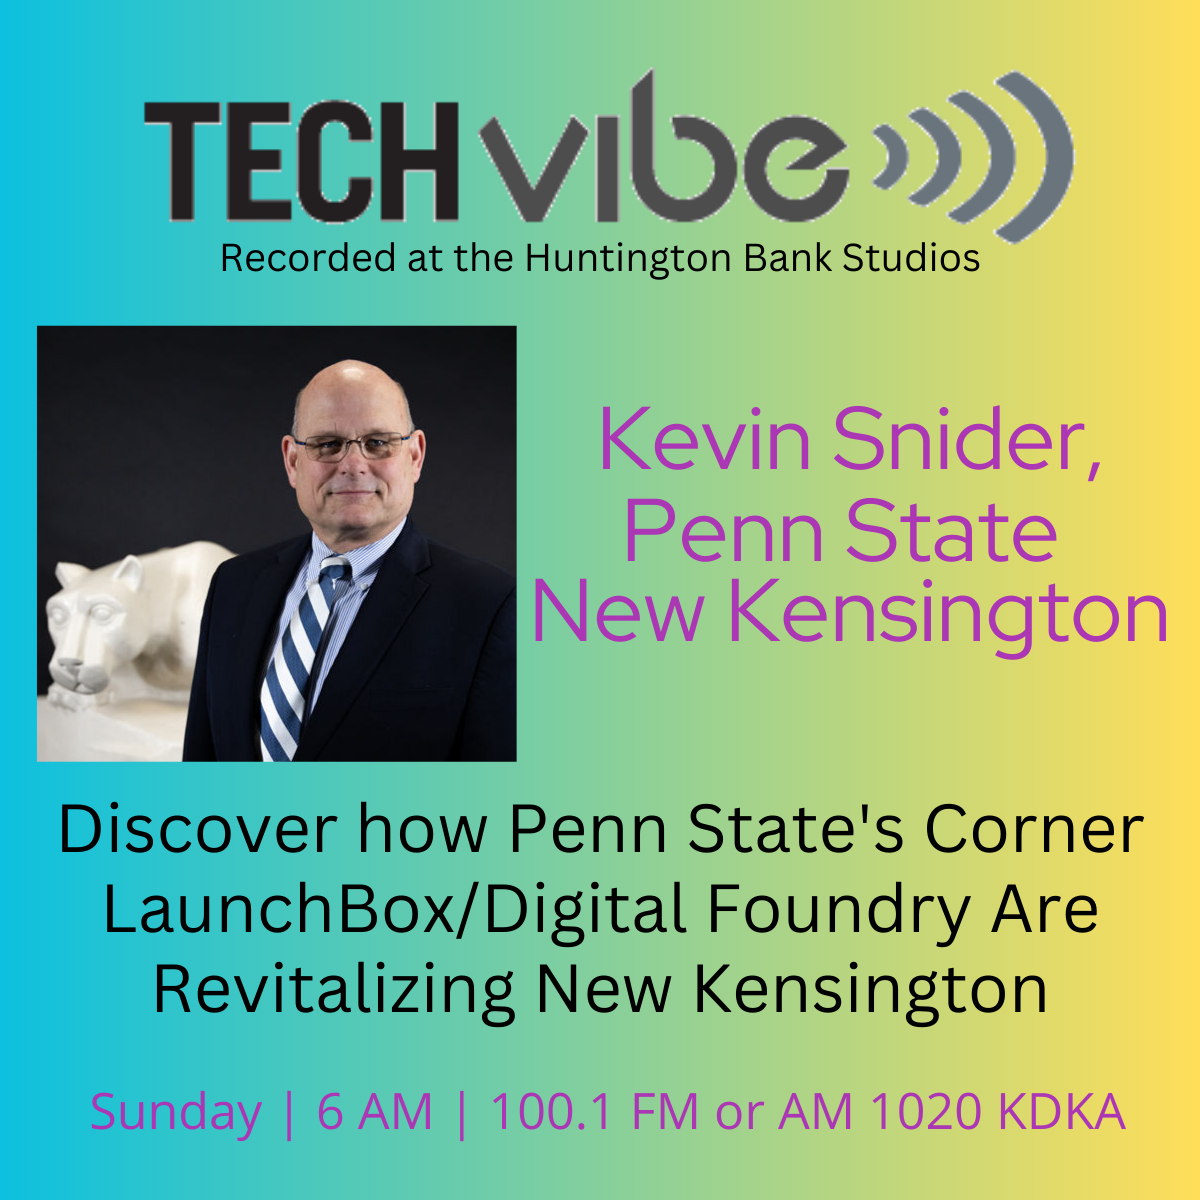 Kevin Snider, Penn State New Kensington